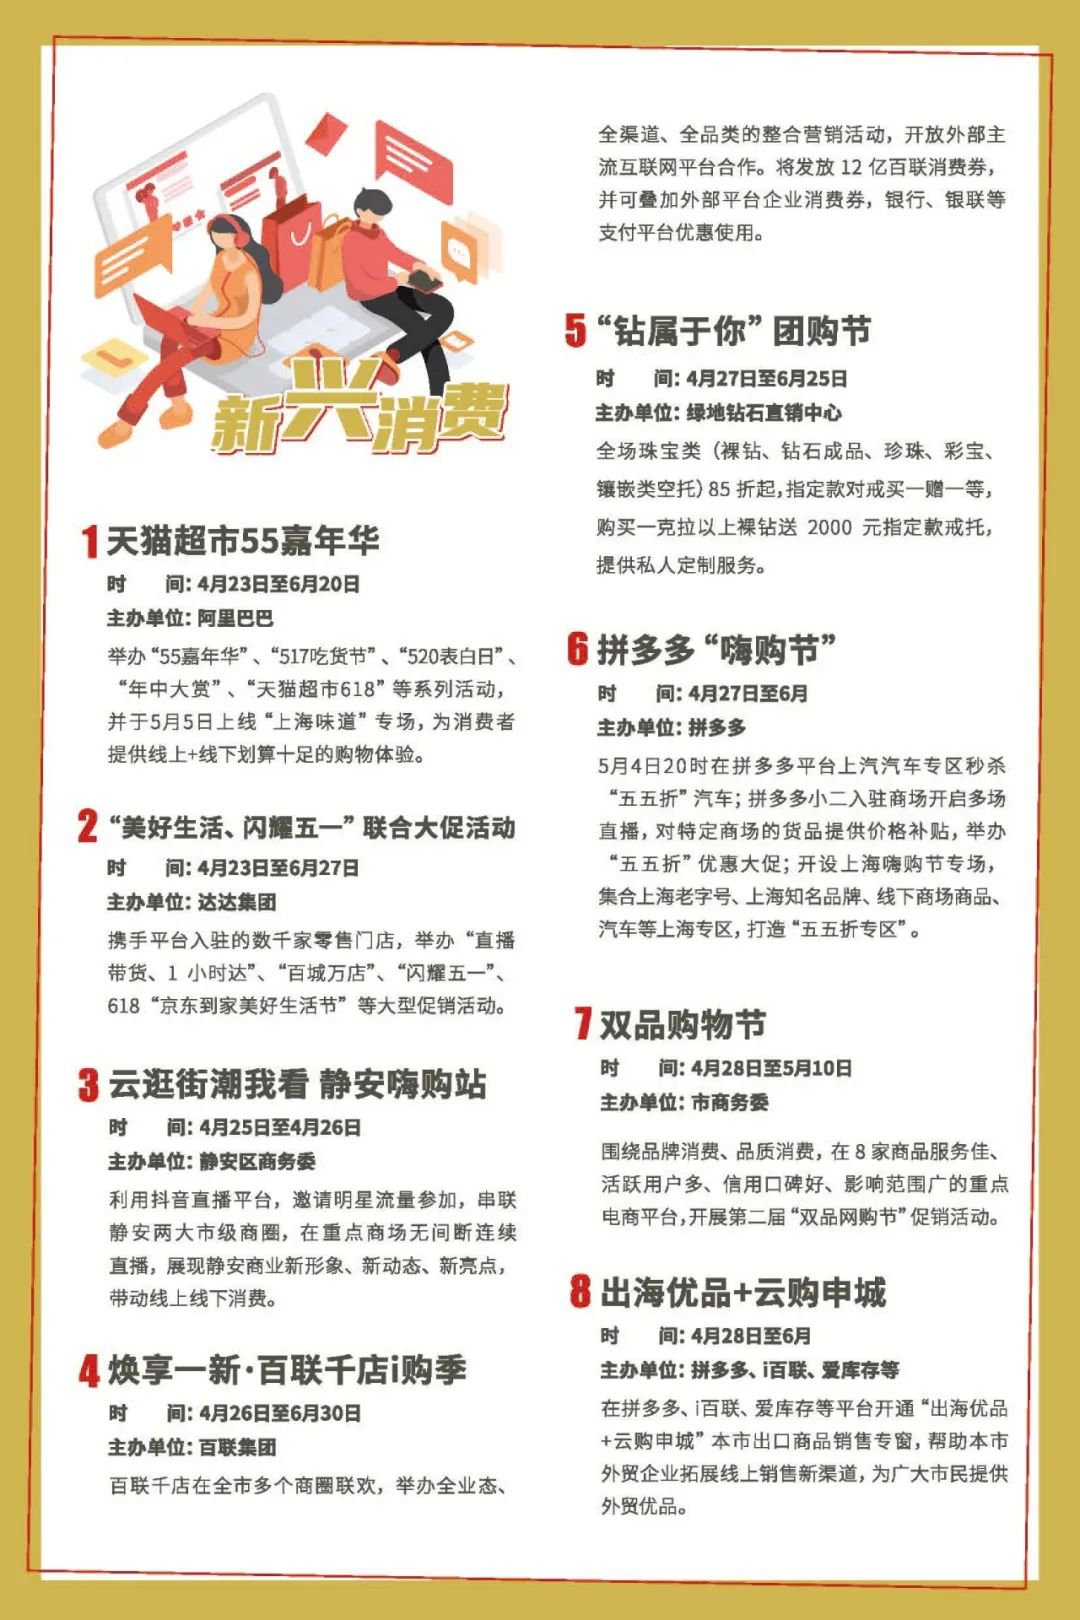 上海五五购物节活动内容安排一览